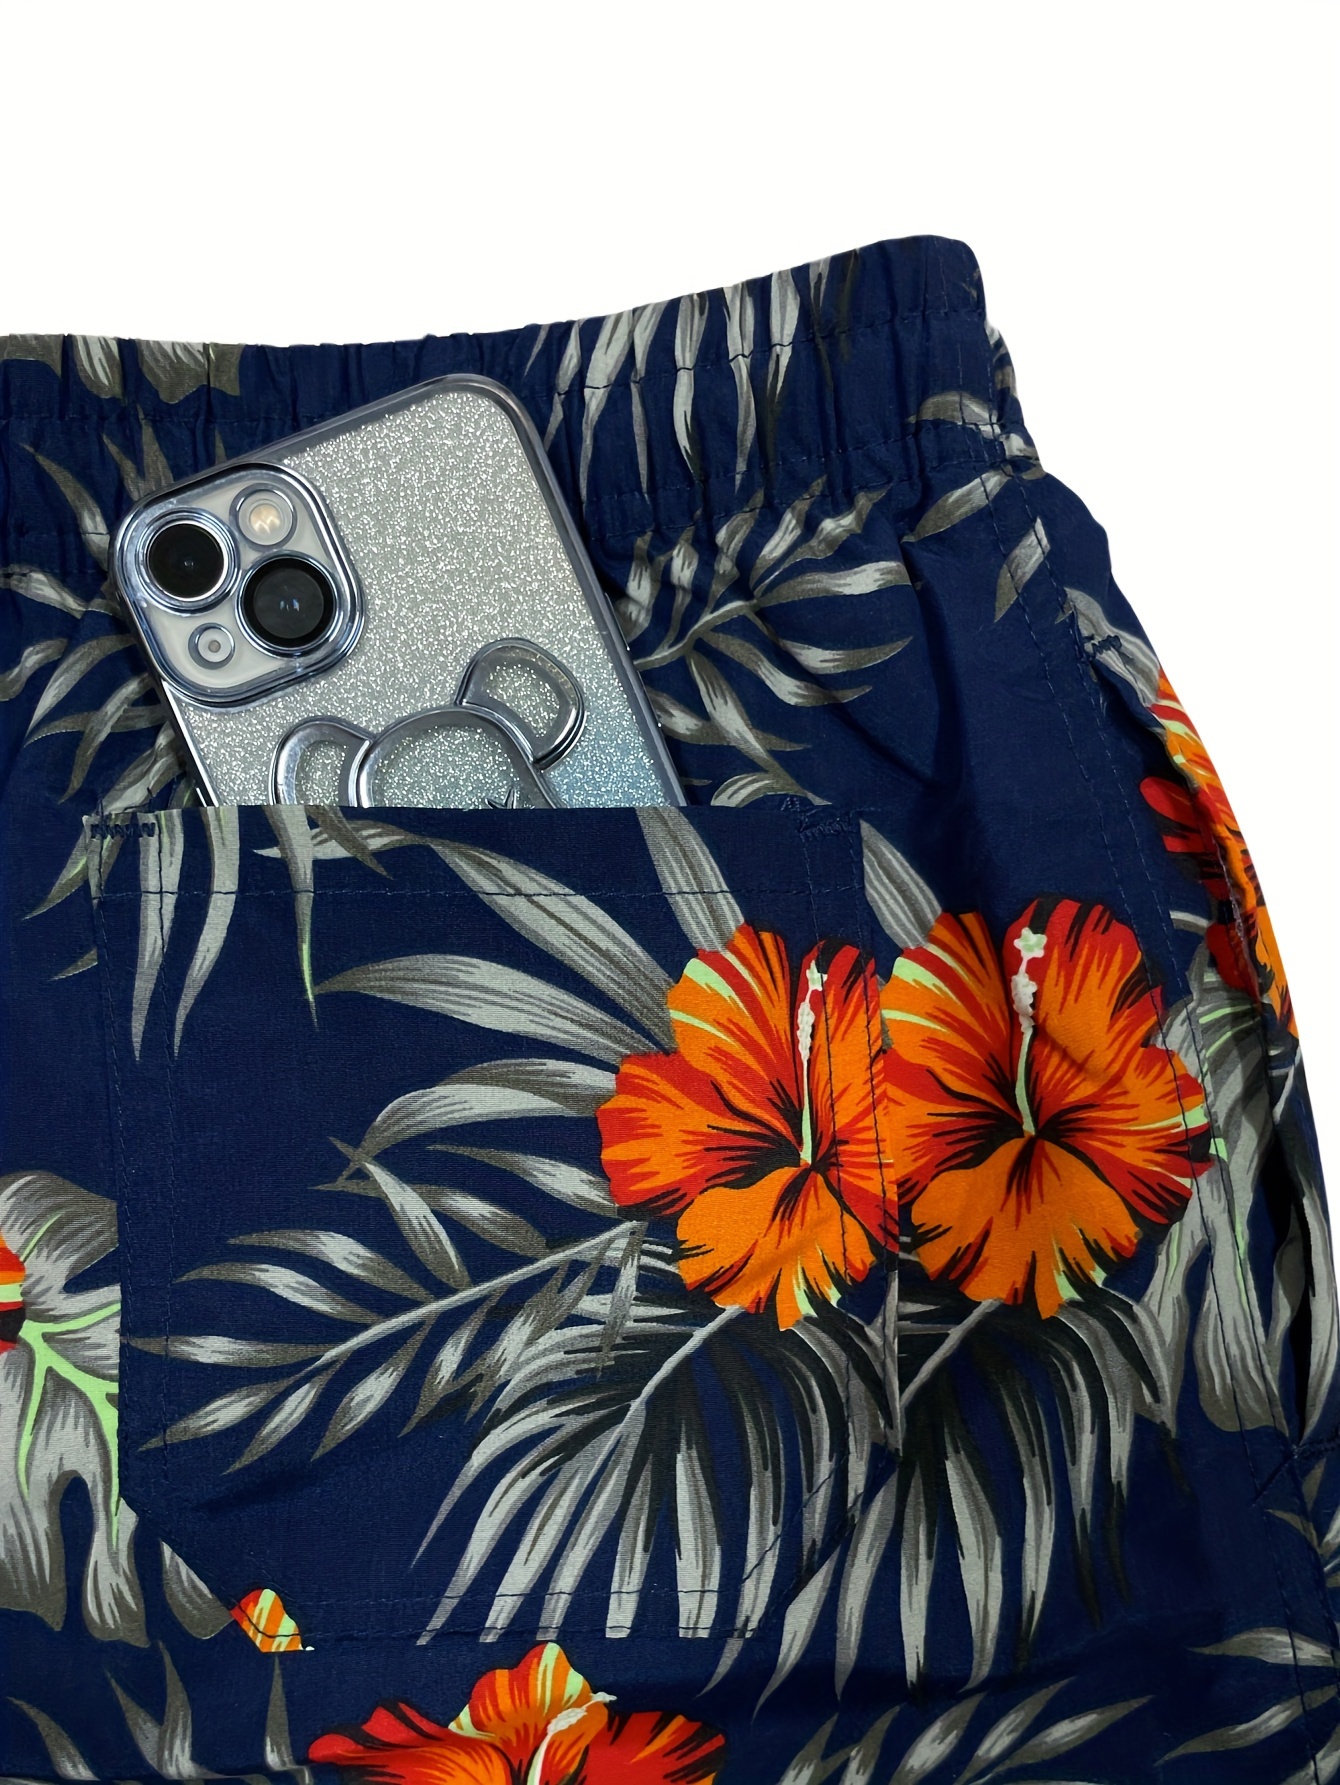 Mens Summer Swim Shorts Beach Hawaii Swimwear Swimming Board Shorts Trunks